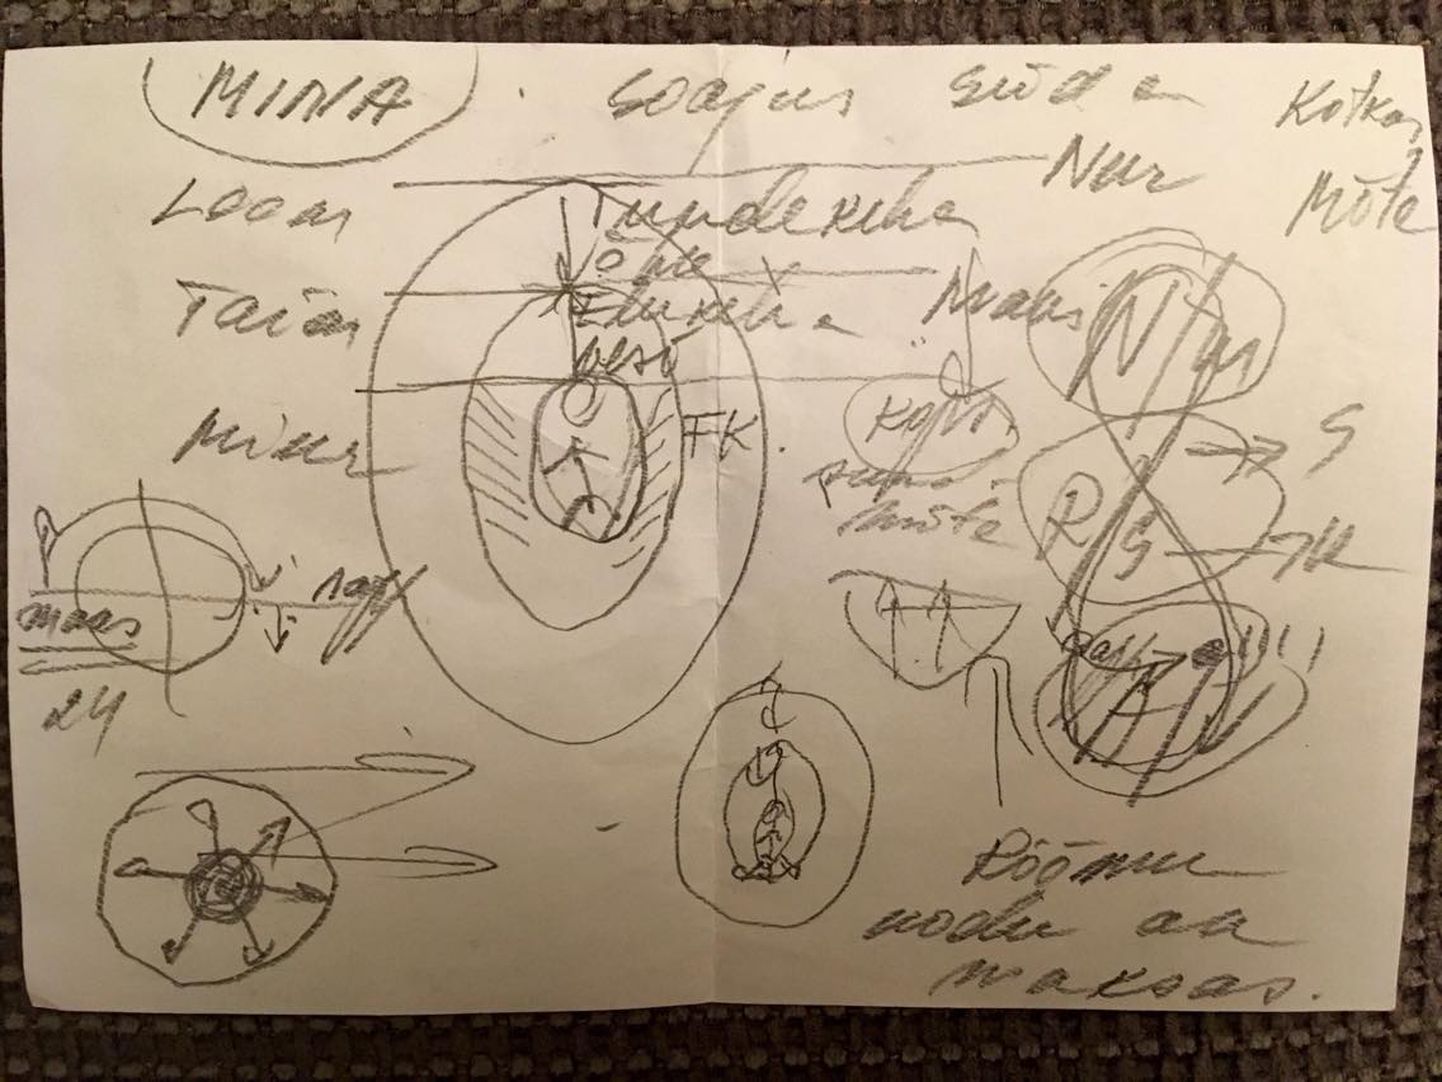 Семейный врач Теллискивиского центра семейной медицины Урве Притс нарисовала пациентке странную схему, под которой в левом углу есть высказываение, что "радость в доме отражается на печени".